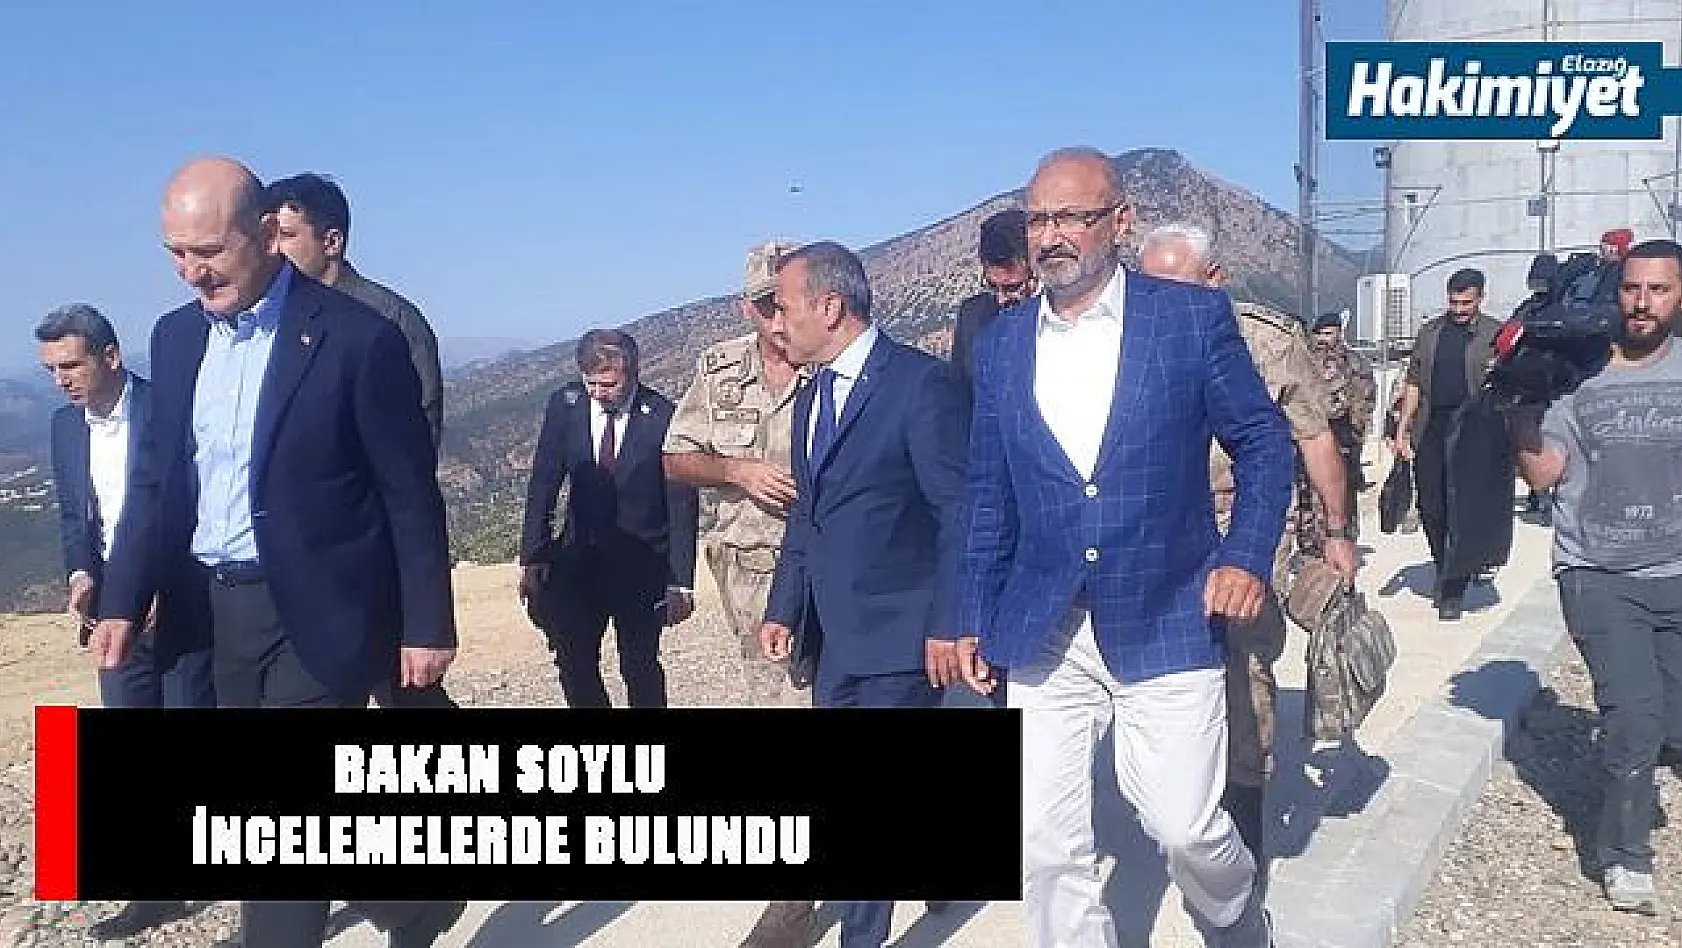 Bakan Soylu: 'Bir siyasi partinin PKK terör örgütüne adam alma merkezi olarak değerlendirildiğini tüm vatandaşlarımız biliyor'